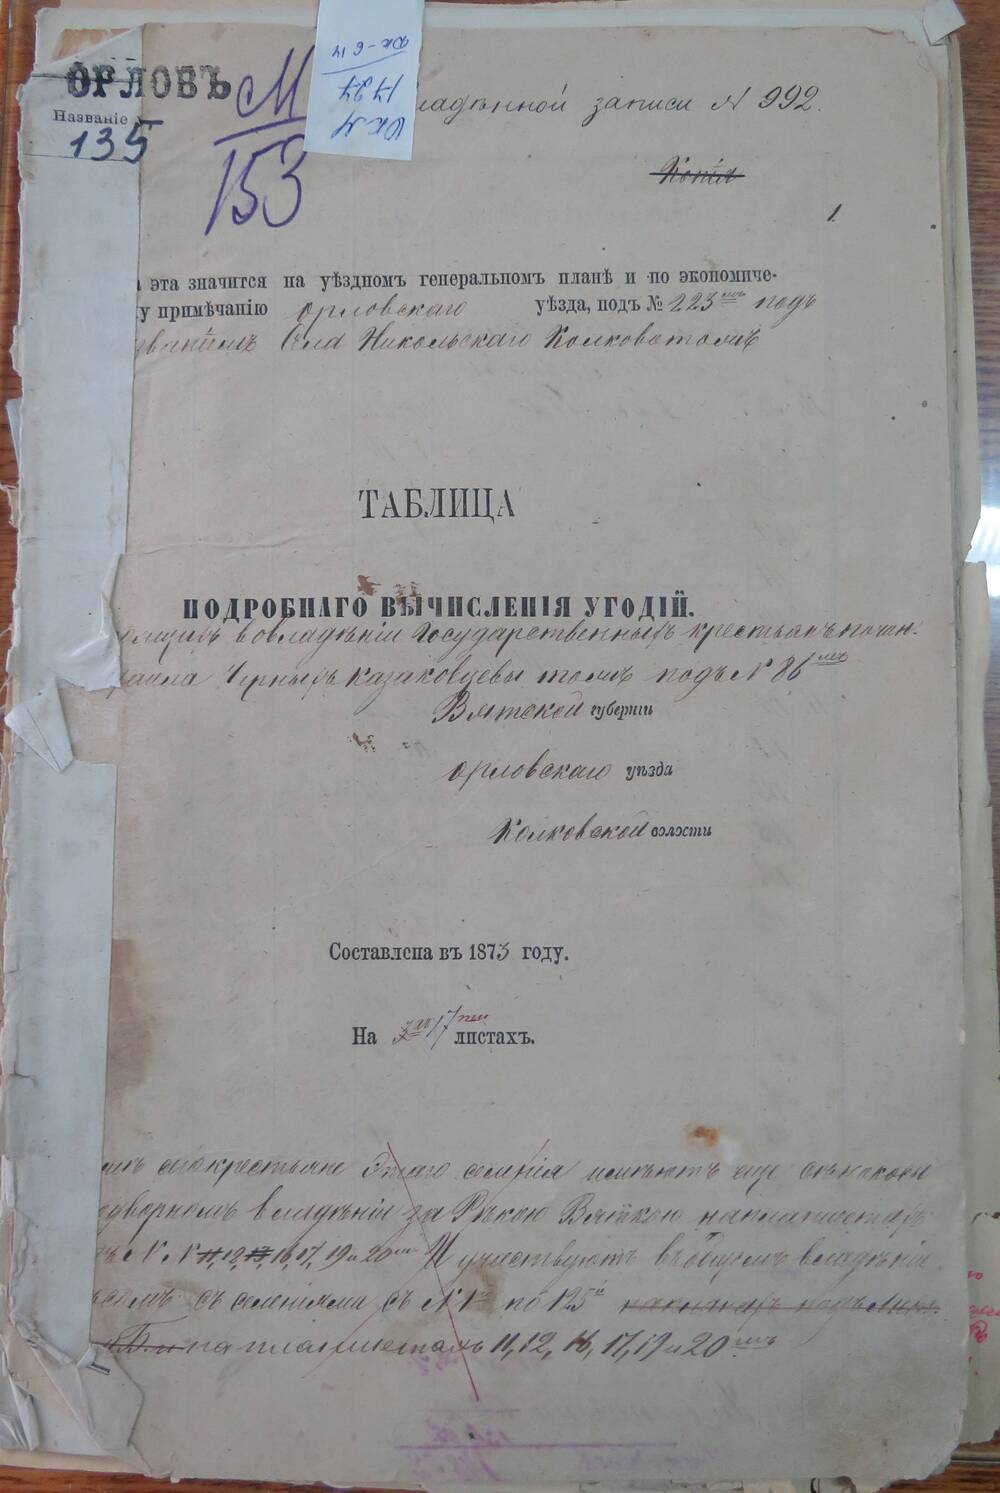 Таблица подробного вычисления угодий  к записи № 992 Вятской губернии, Орловского уезда, Колковской волости.
Составлена в 1873 году.